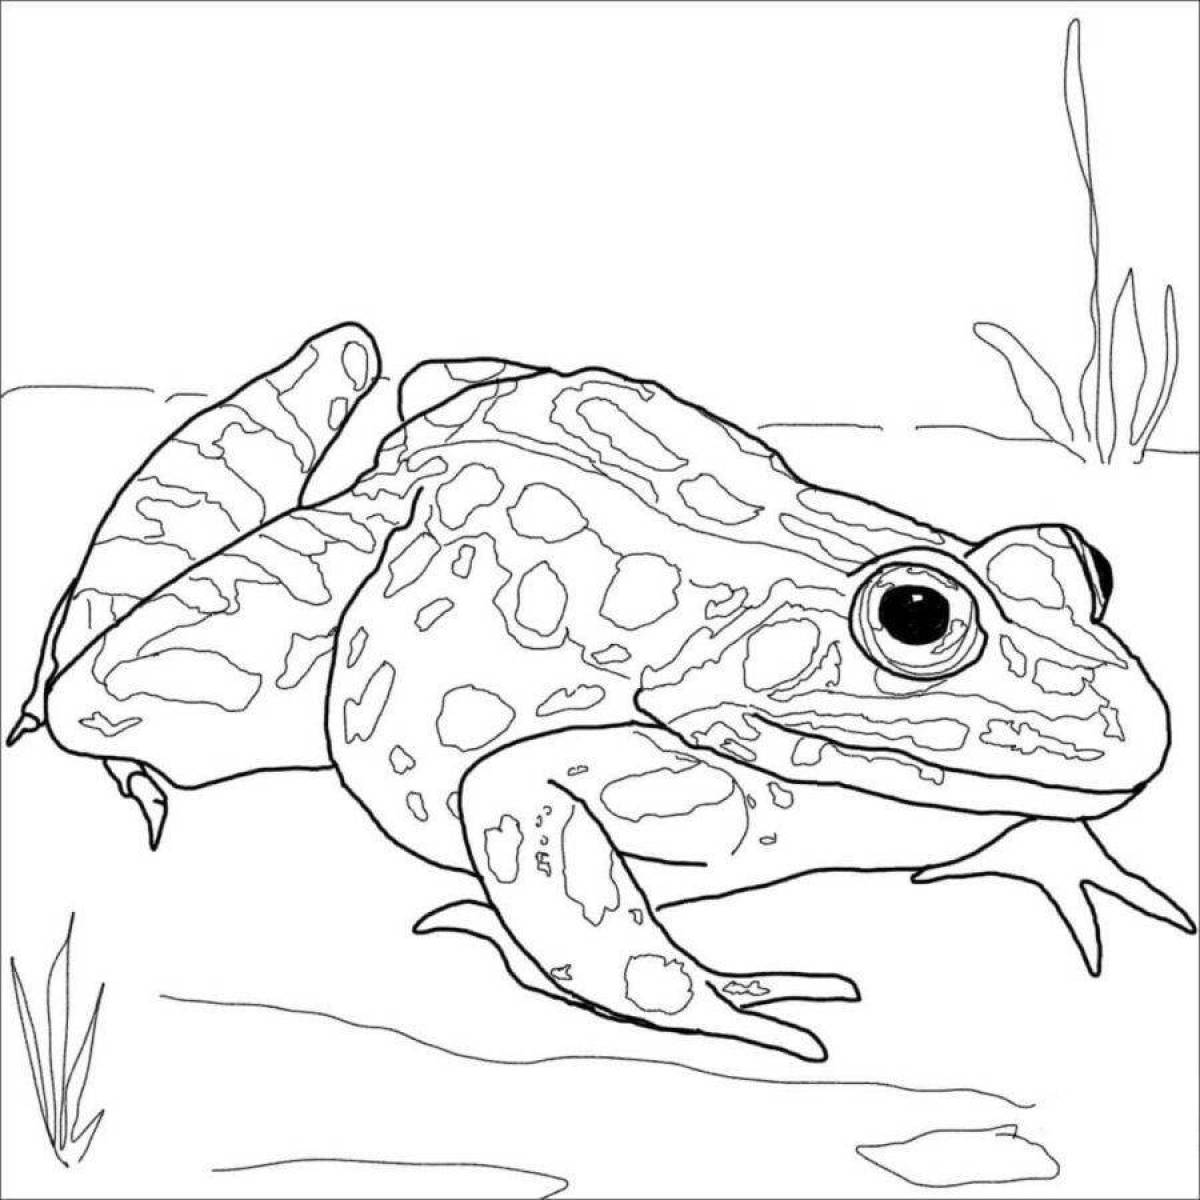 Интенсивная раскраска лягушки-дротика